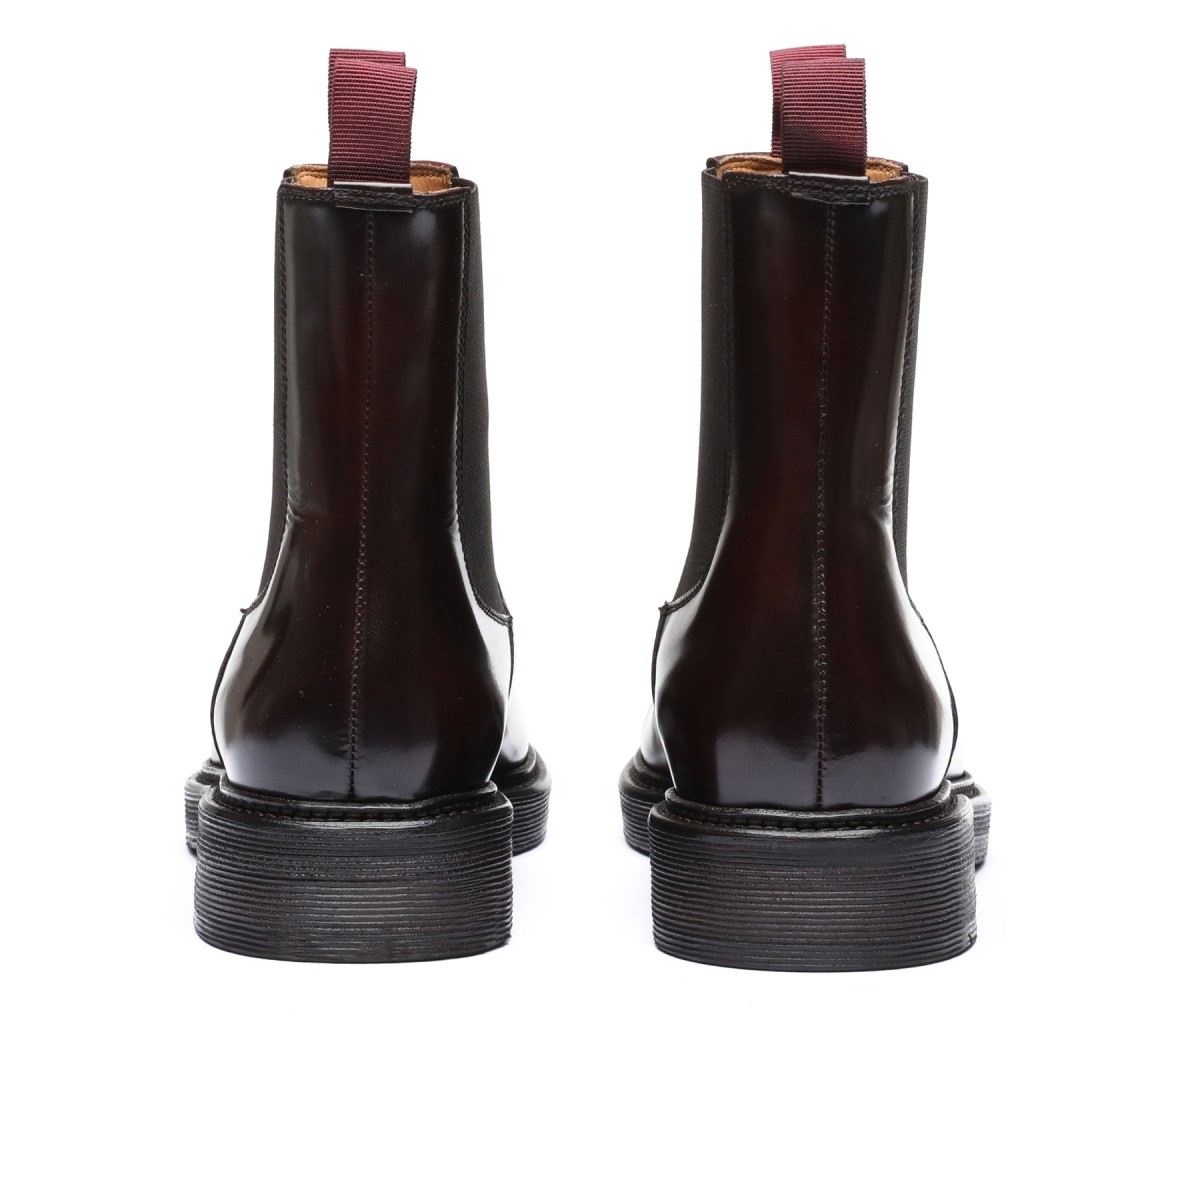 Bordeaux leather ankle boots